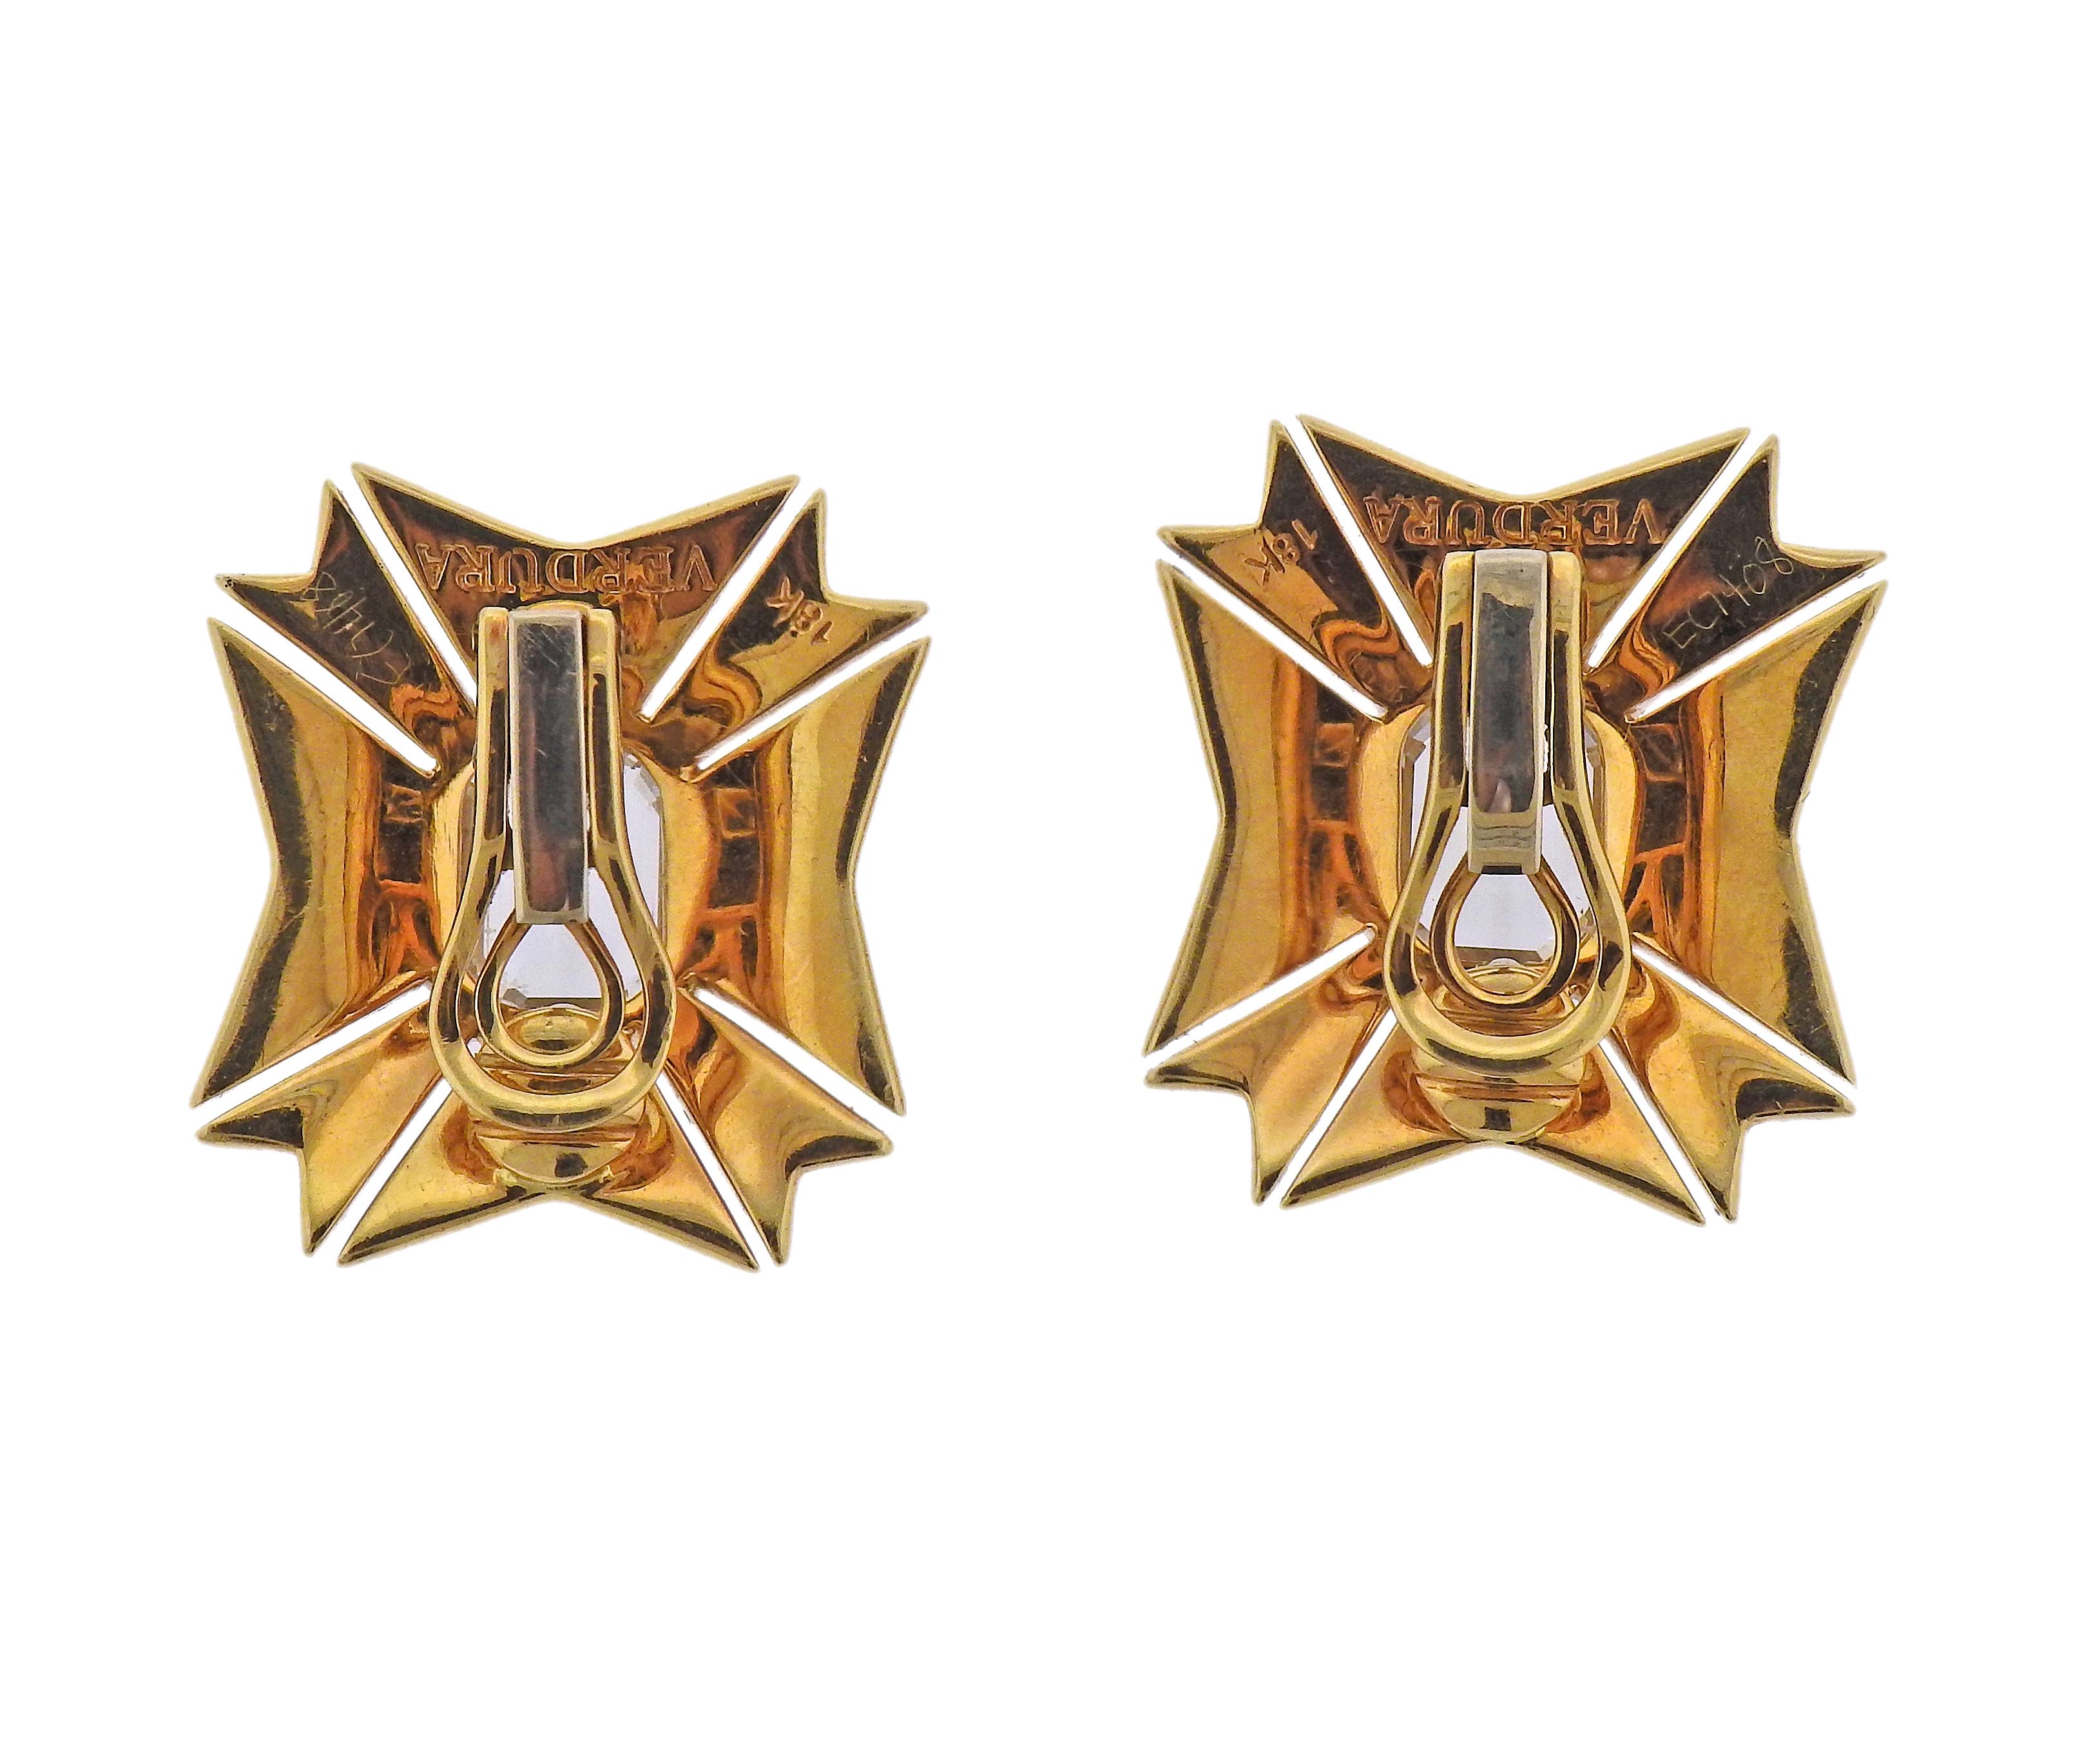 Paar Ohrringe aus 18 Karat Gold von Verdura, verziert mit einem 10 x 8 mm großen weißen Topas und schwarzer Emaille. Die Ohrringe sind 26 mm x 25 mm groß. Gezeichnet: Verdura, 18k. Gewicht - 23,8 Gramm. 